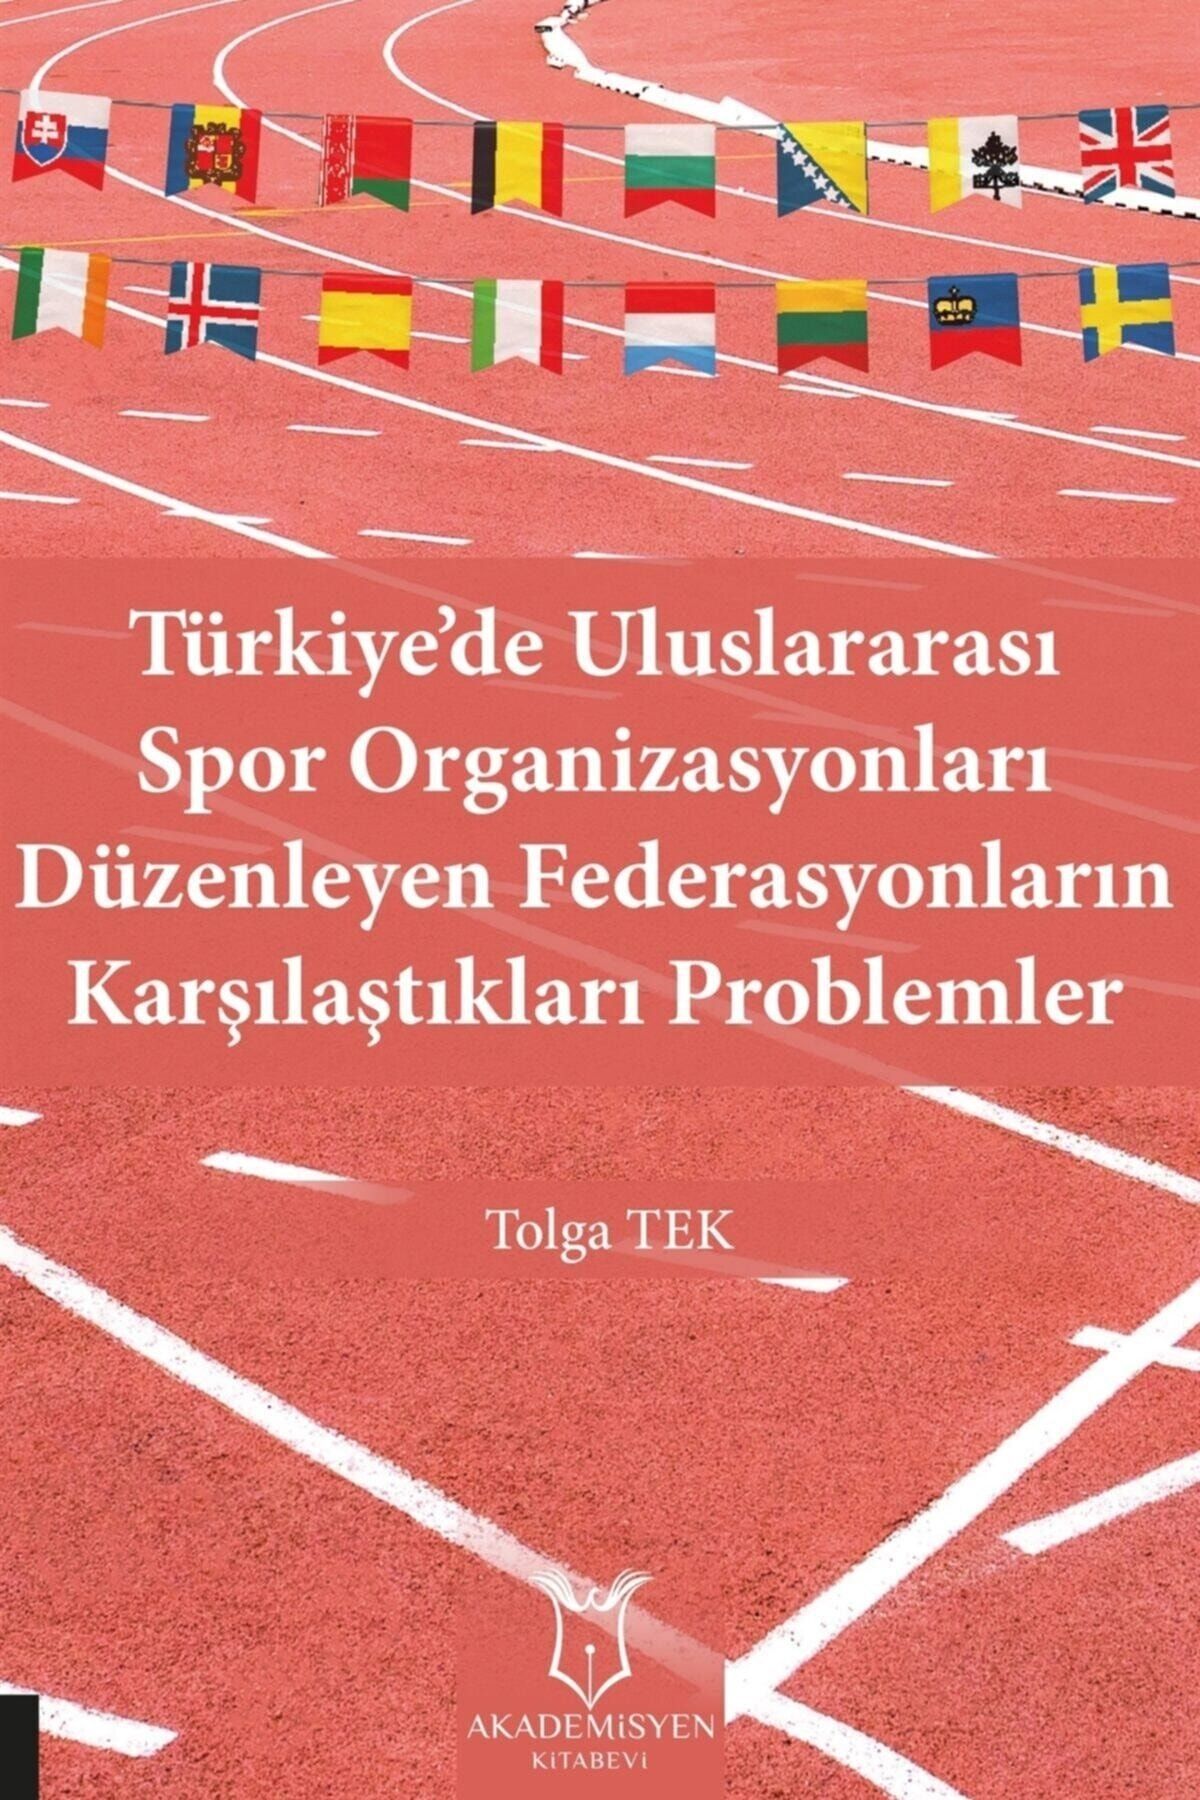 Akademisyen Kitabevi Türkiye’de Uluslararası Spor Organizasyonları Düzenleyen Federasyonların Karşılaştıkları